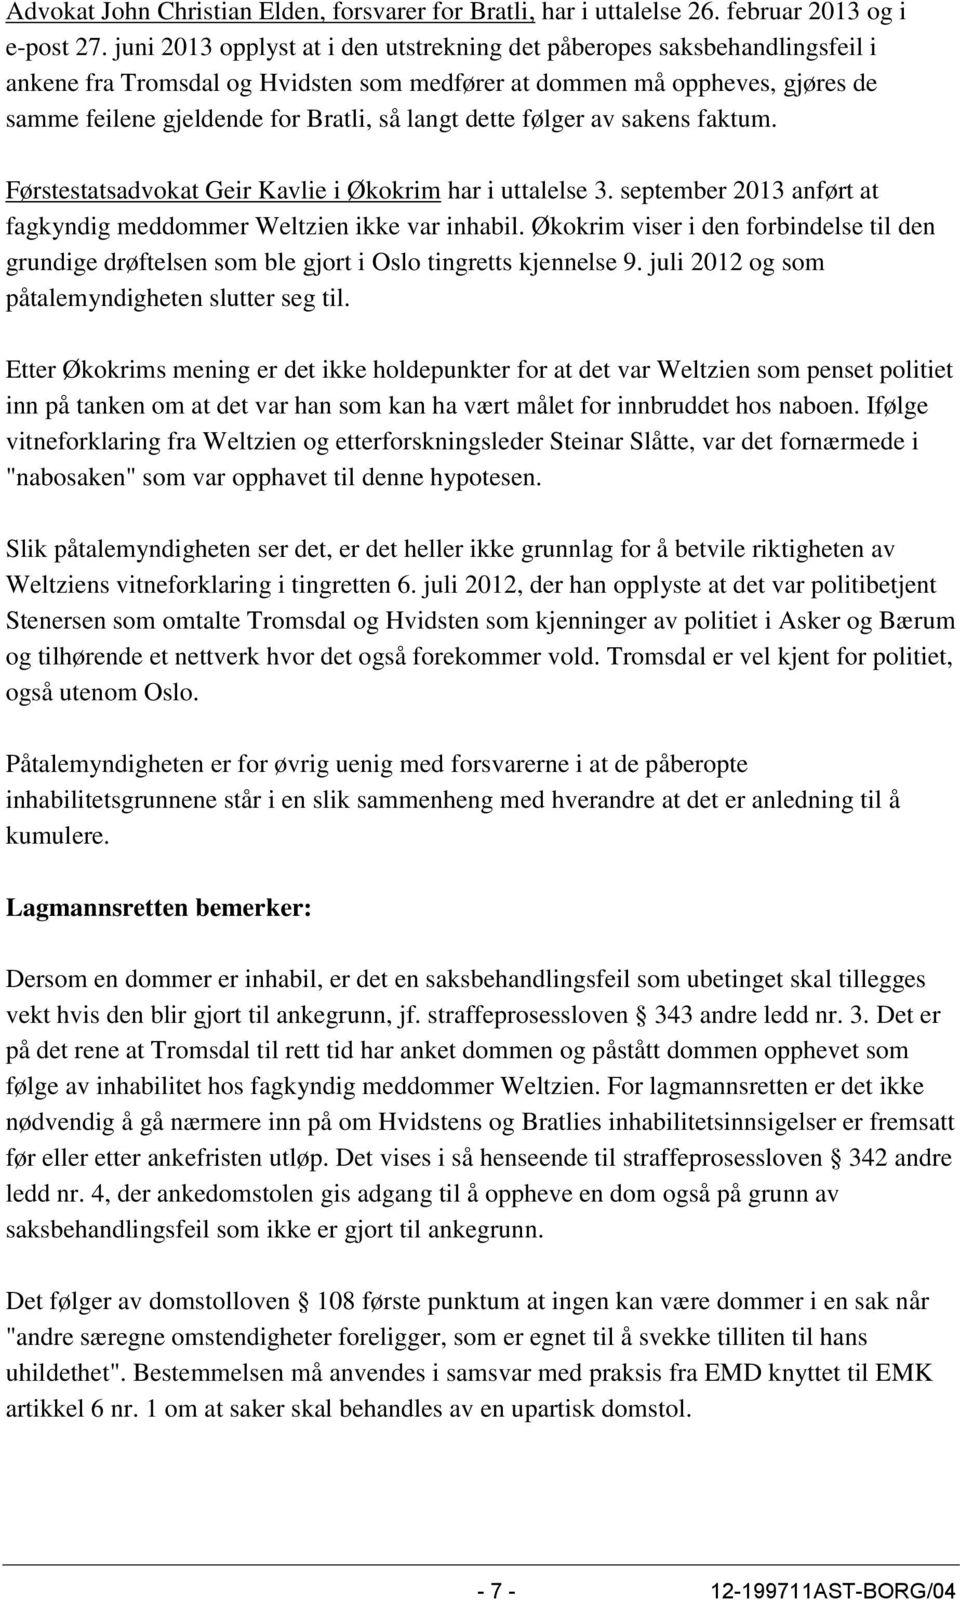 dette følger av sakens faktum. Førstestatsadvokat Geir Kavlie i Økokrim har i uttalelse 3. september 2013 anført at fagkyndig meddommer Weltzien ikke var inhabil.